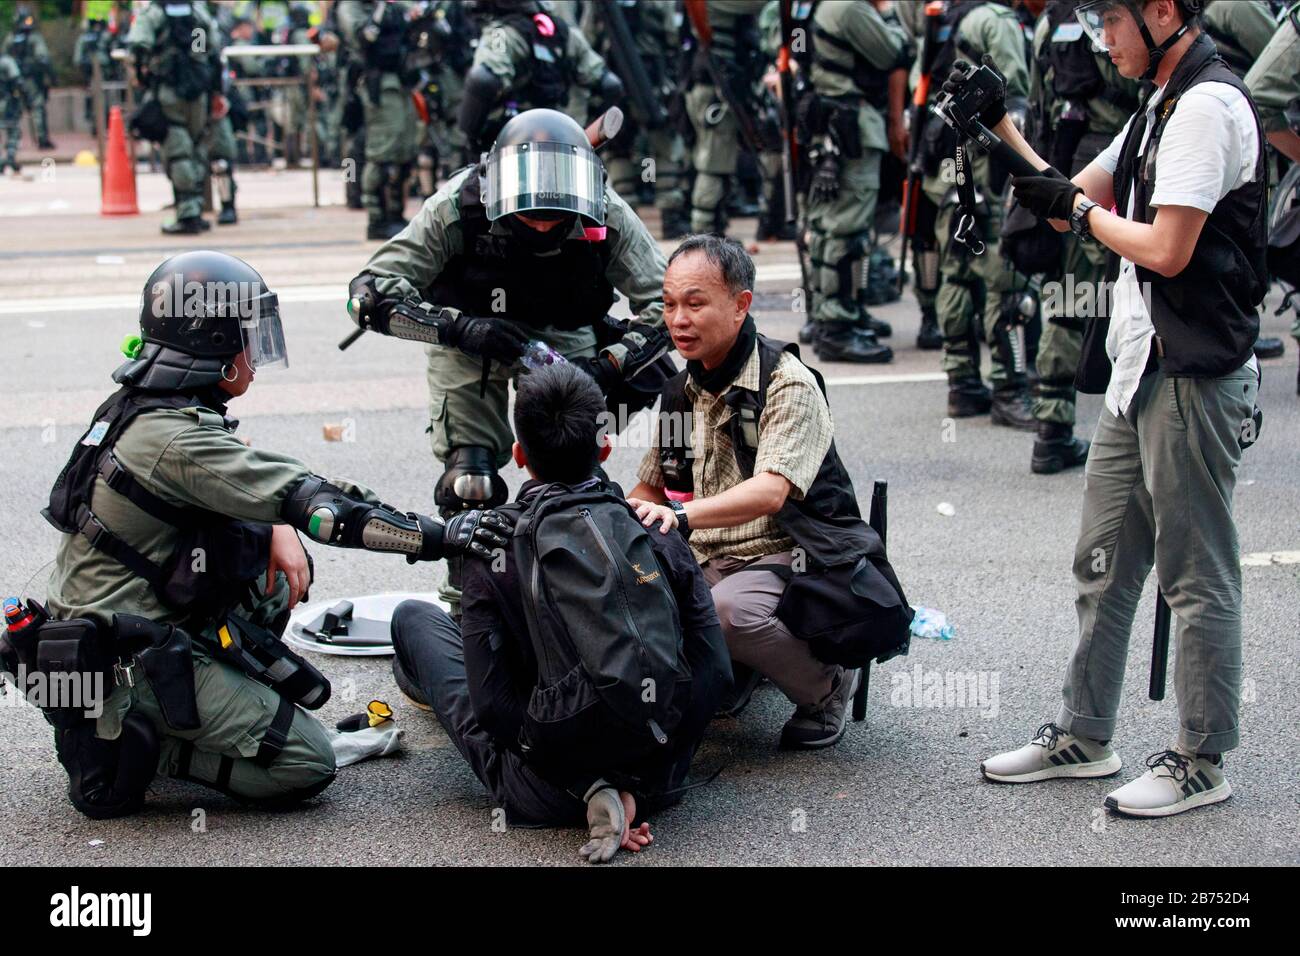 L'équipe de police d'élite et la police anti-émeute arrêtent les manifestants lors d'une marche anti-totalitaire mondiale non autorisée à Hong Kong, en Chine. Banque D'Images